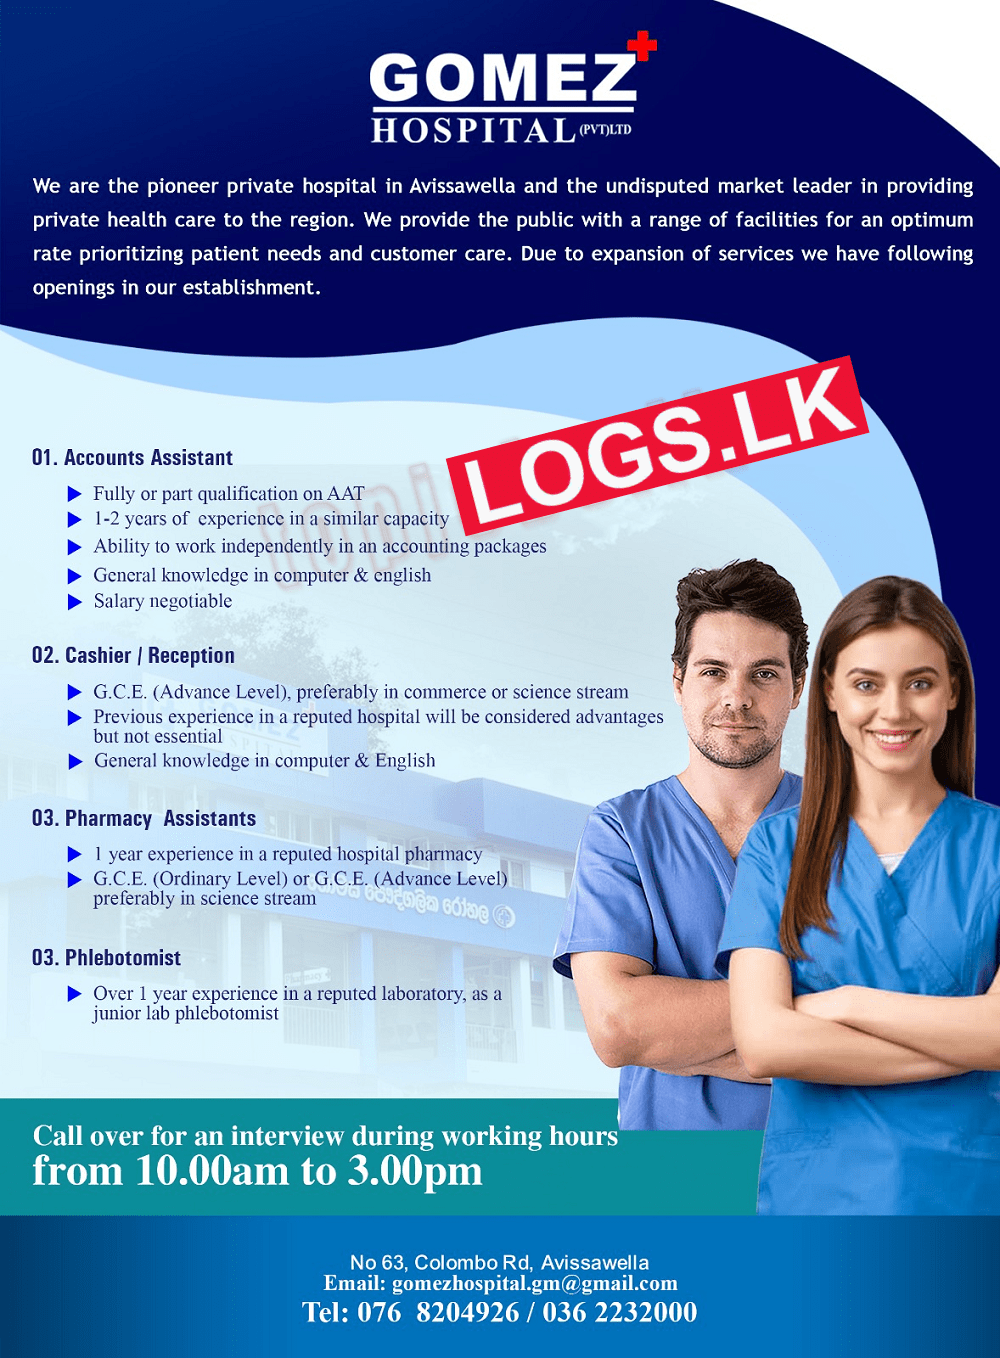 Hospital Job Vacancies at Gomez Hospital (Pvt) Ltd Job Vacancies in Sri Lanka